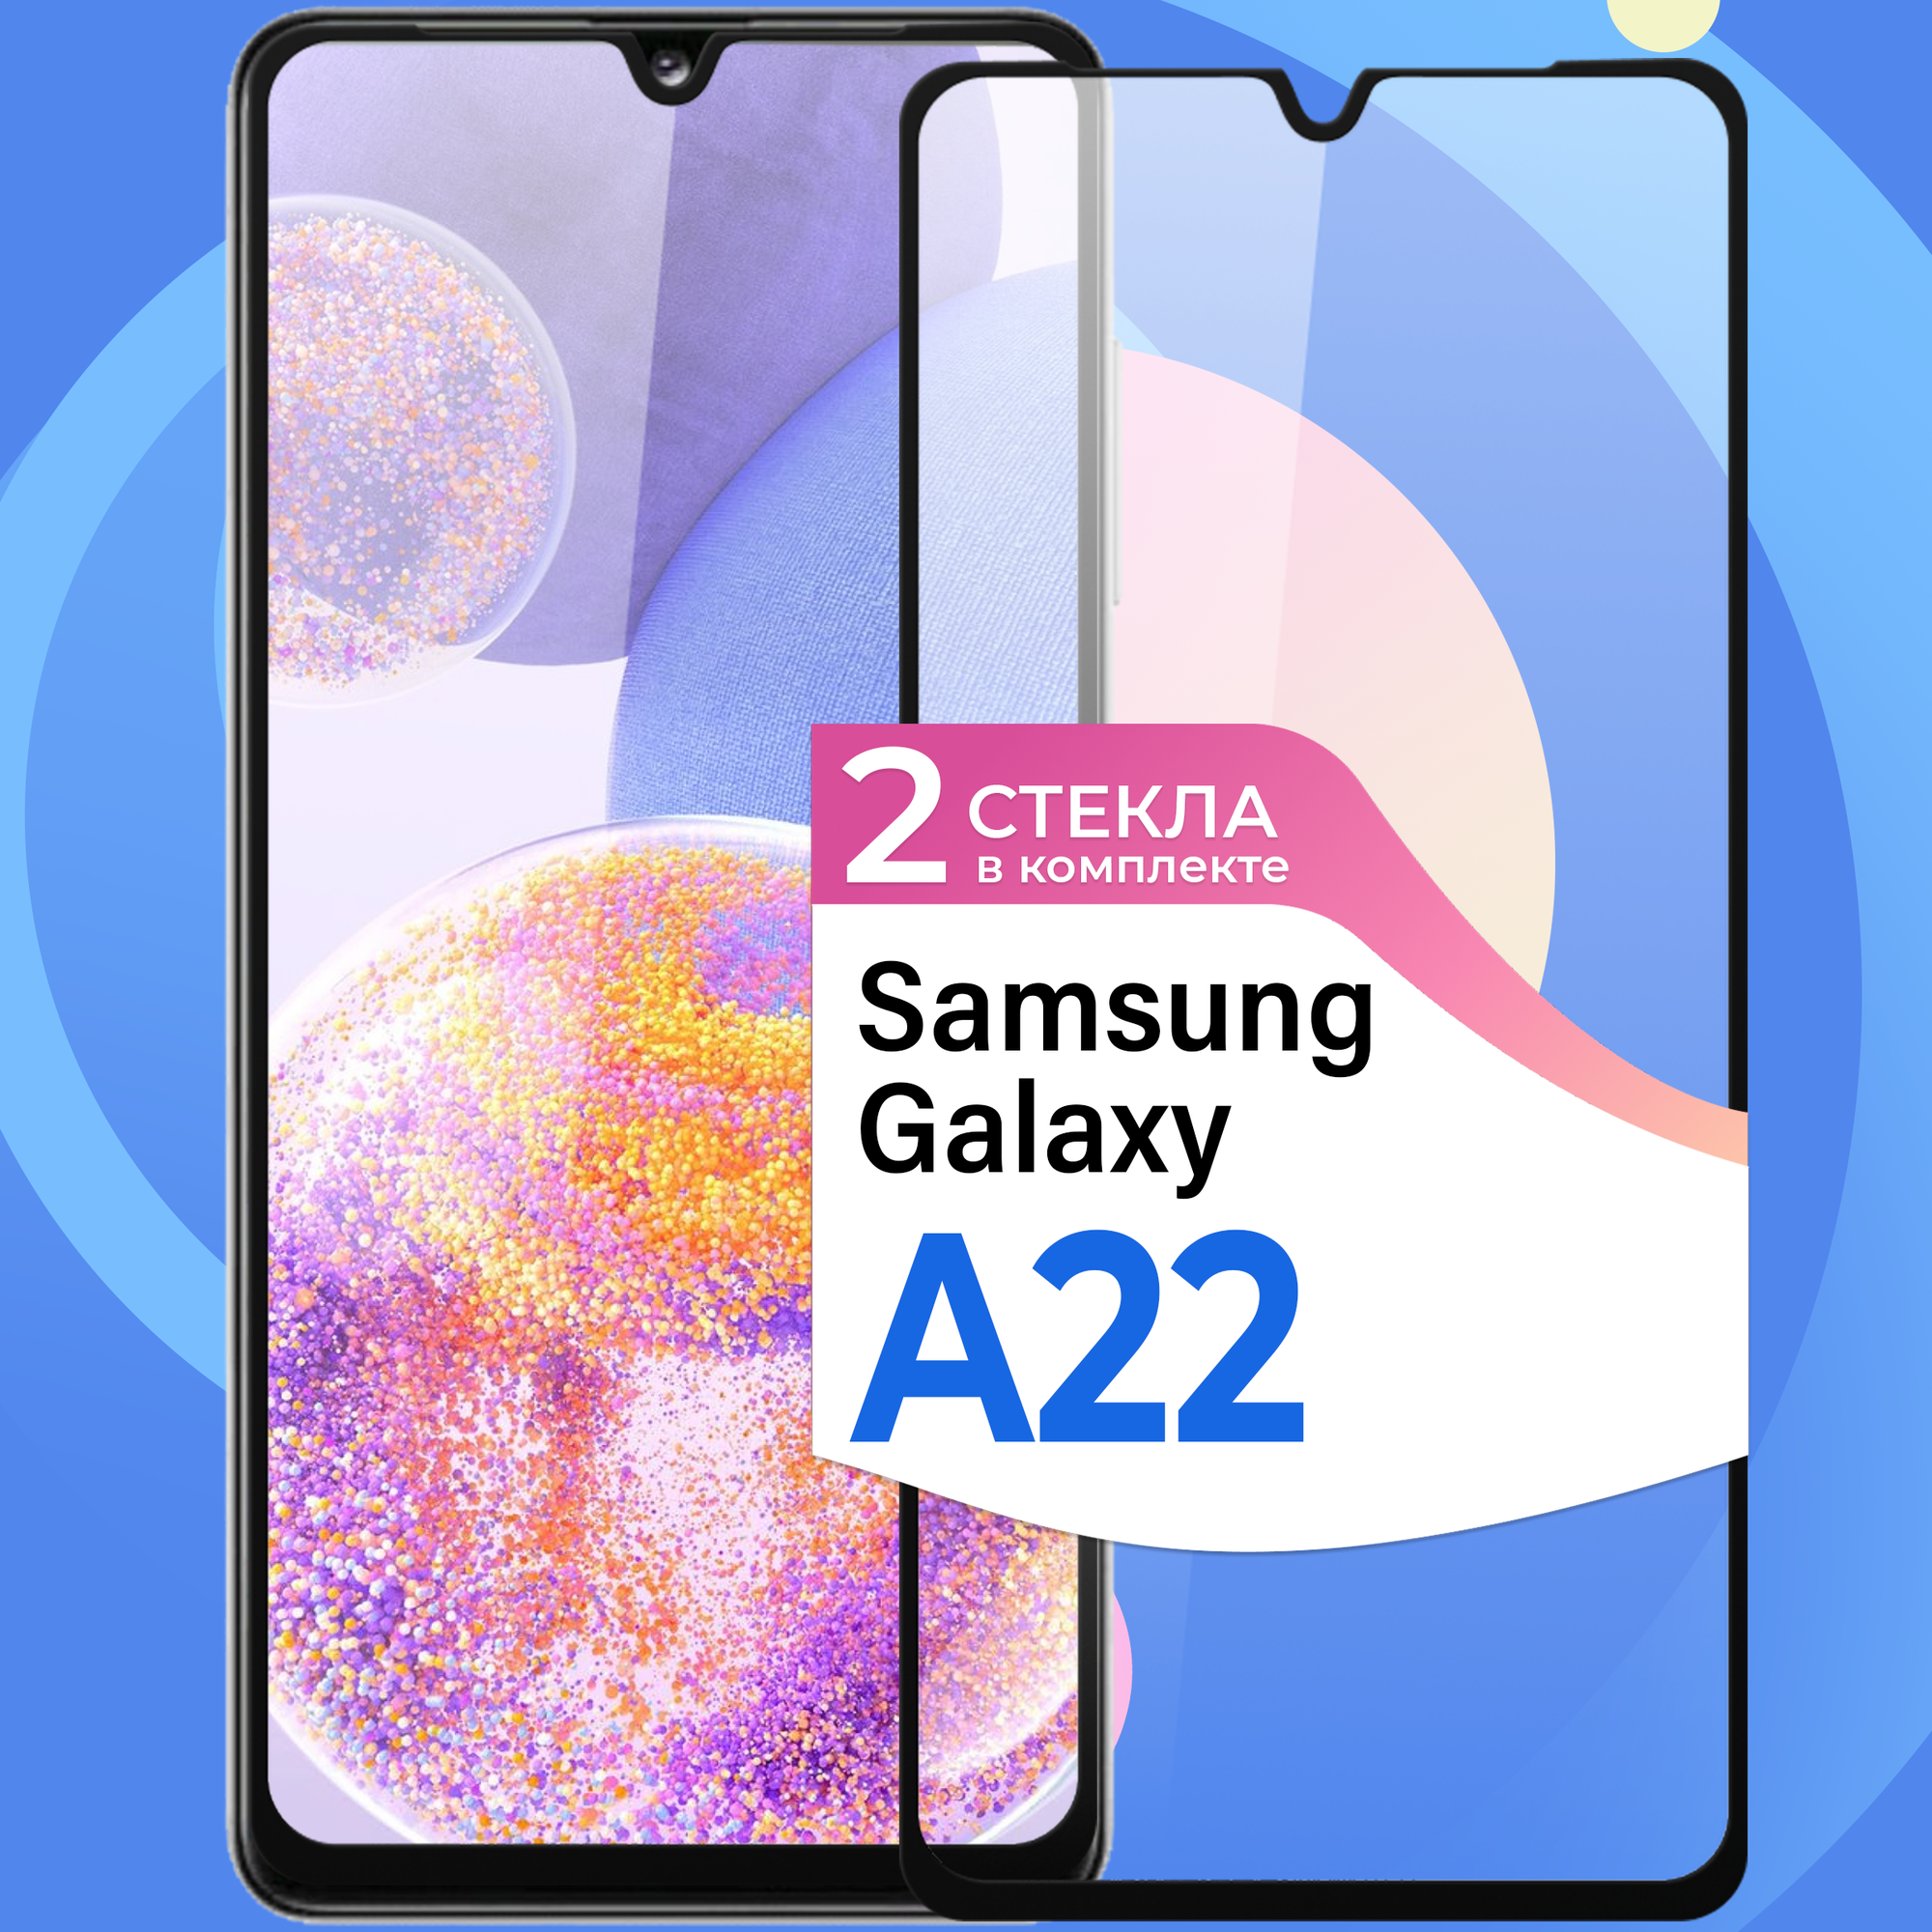 Комплект 2 шт. Защитное стекло на телефон Samsung Galaxy A22 / Противоударное олеофобное стекло для смартфона Самсунг Галакси А22